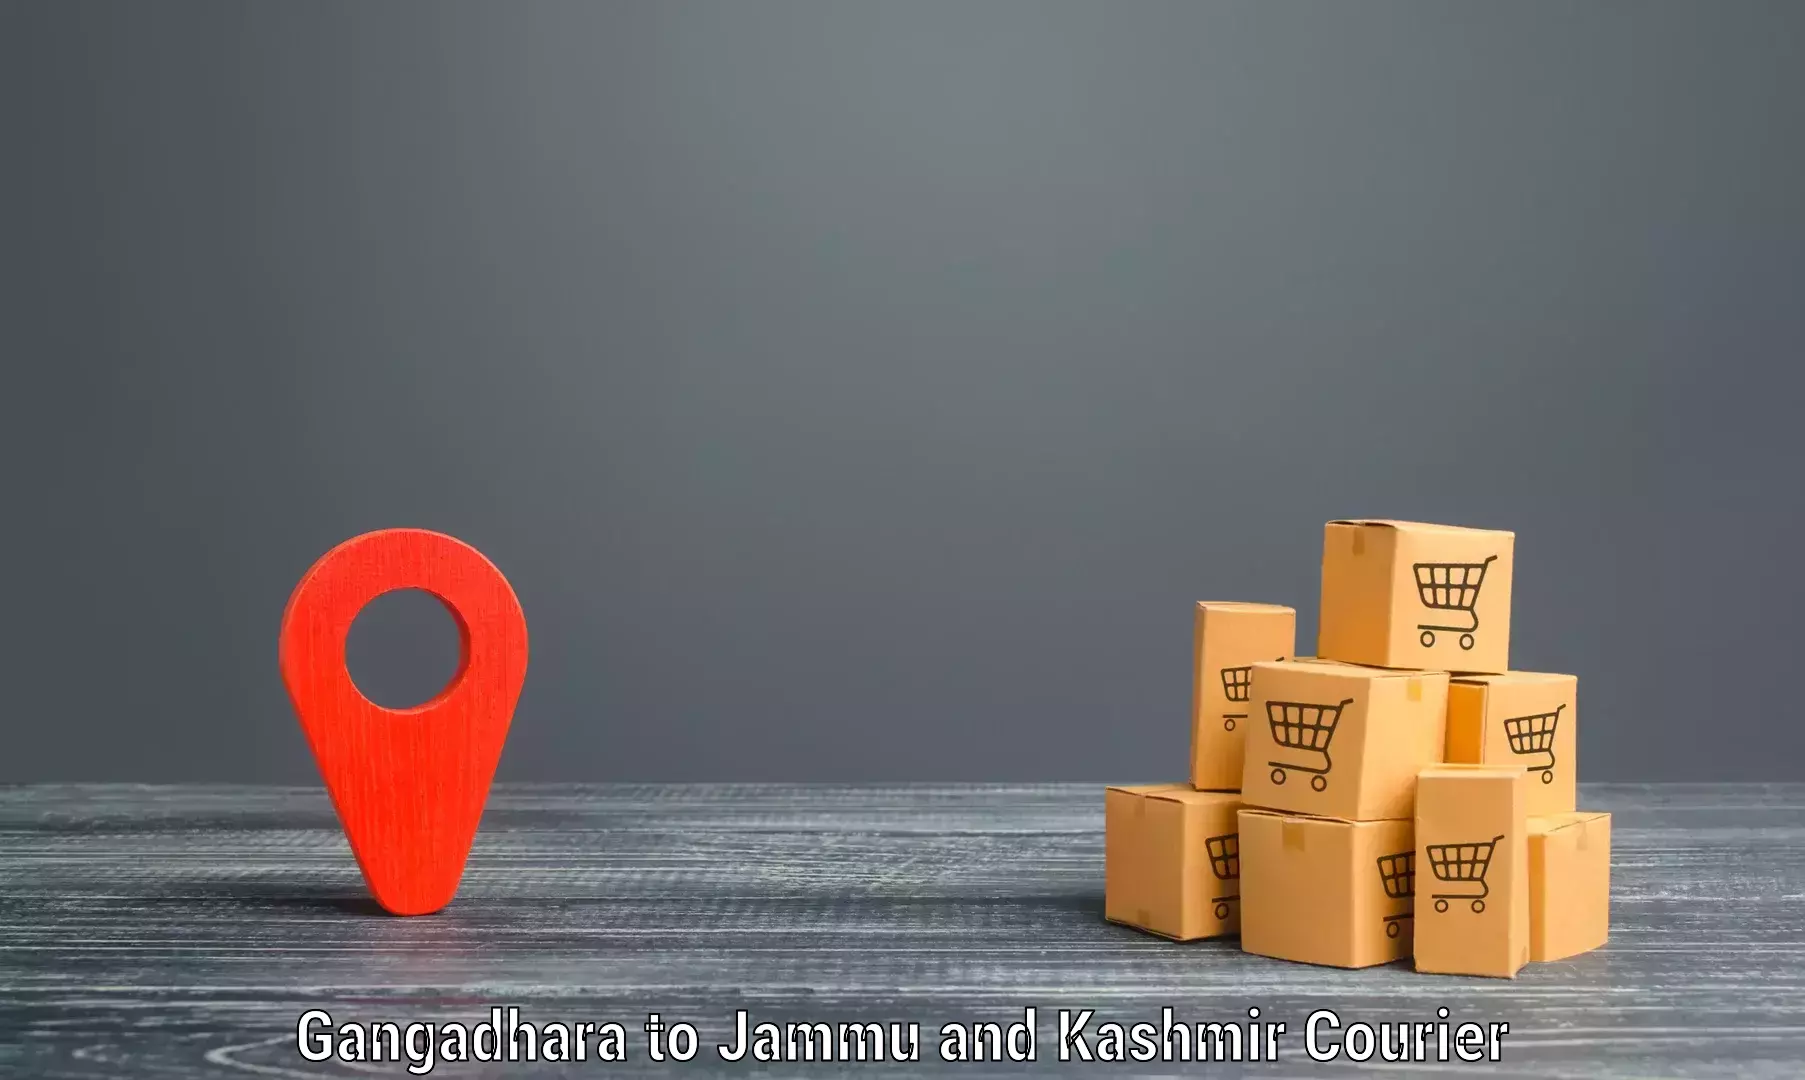 Seamless shipping experience Gangadhara to Kargil